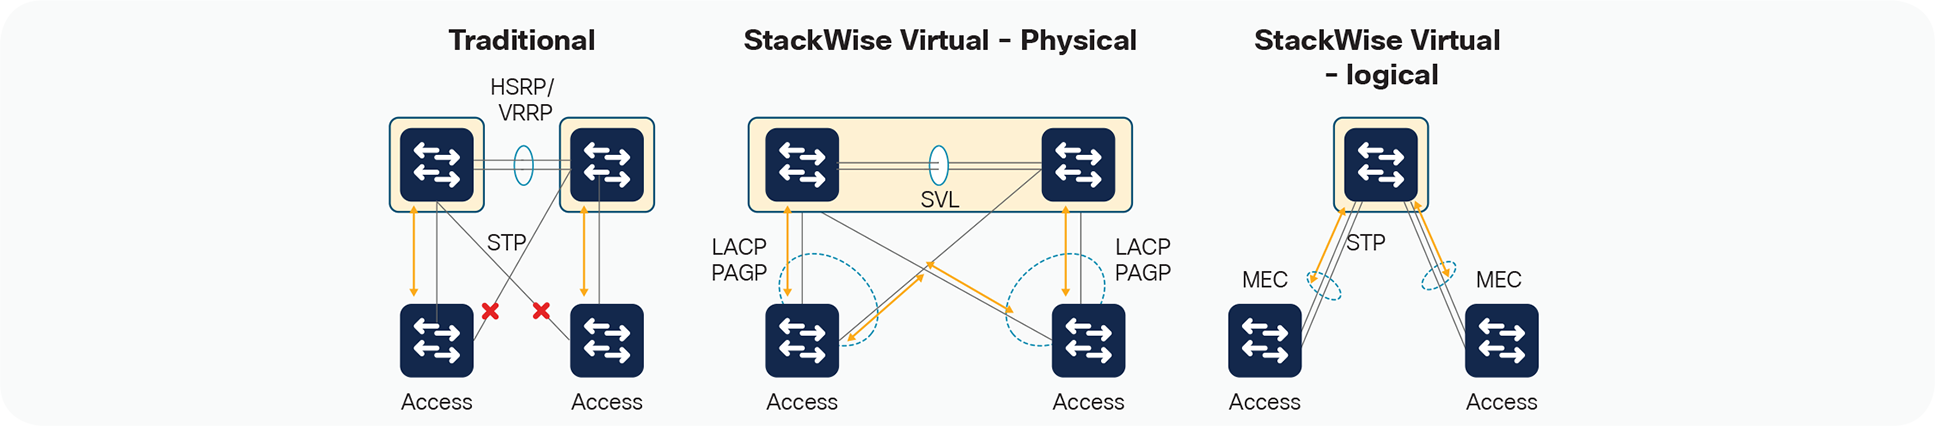 StackWise Virtual Benefits